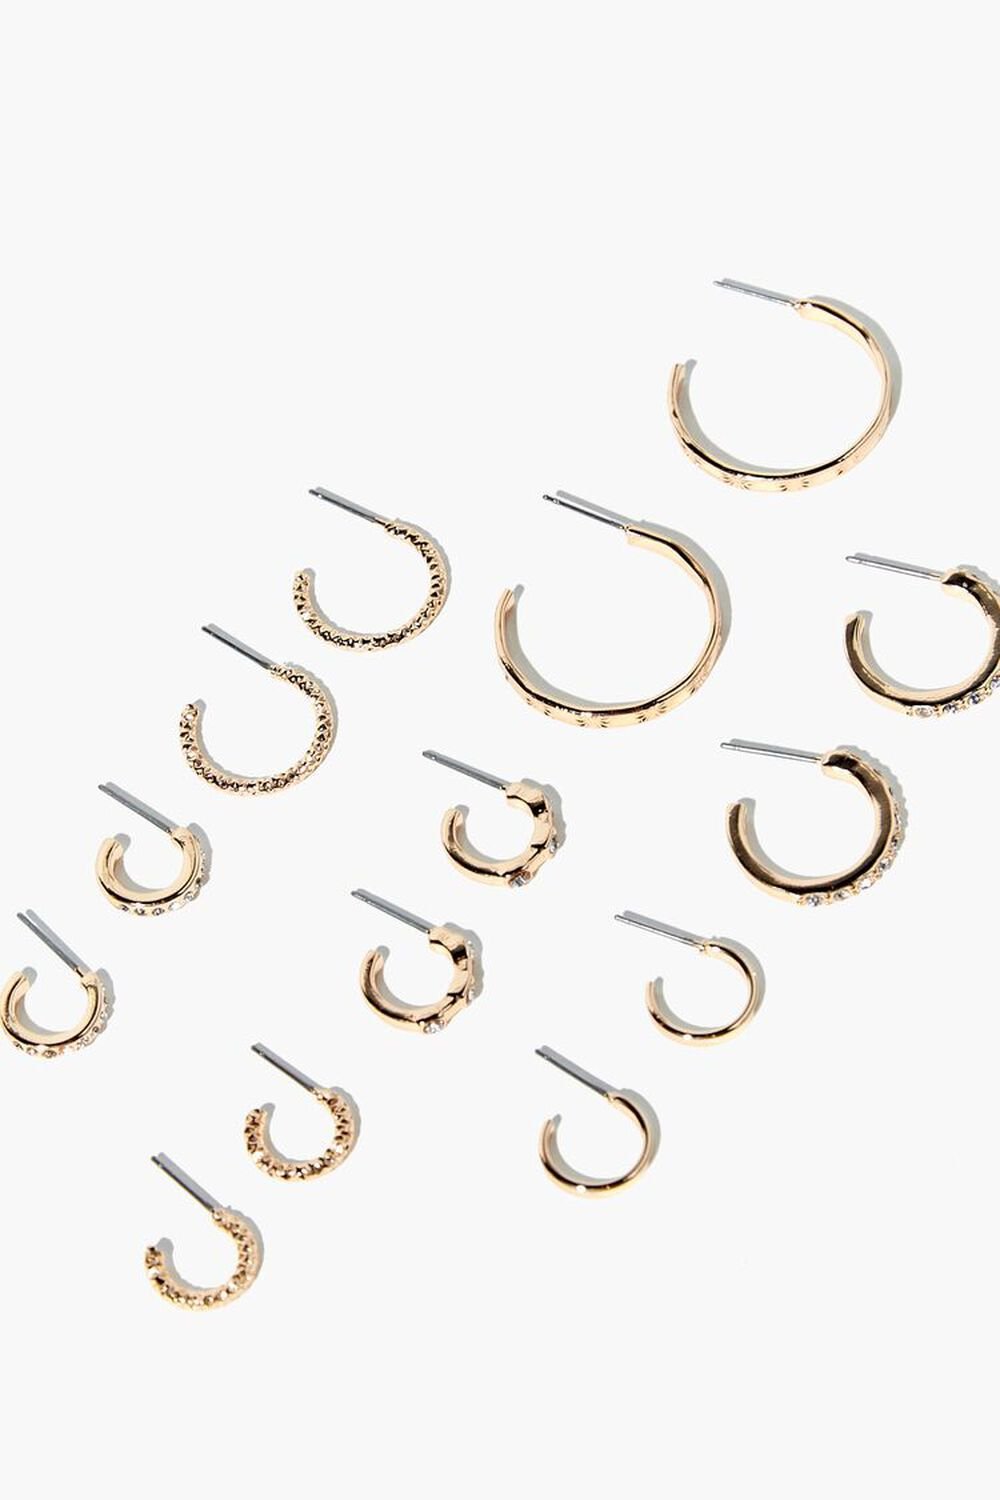 GOLD/CLEAR Rhinestone Open-End Hoop Earrings, image 2